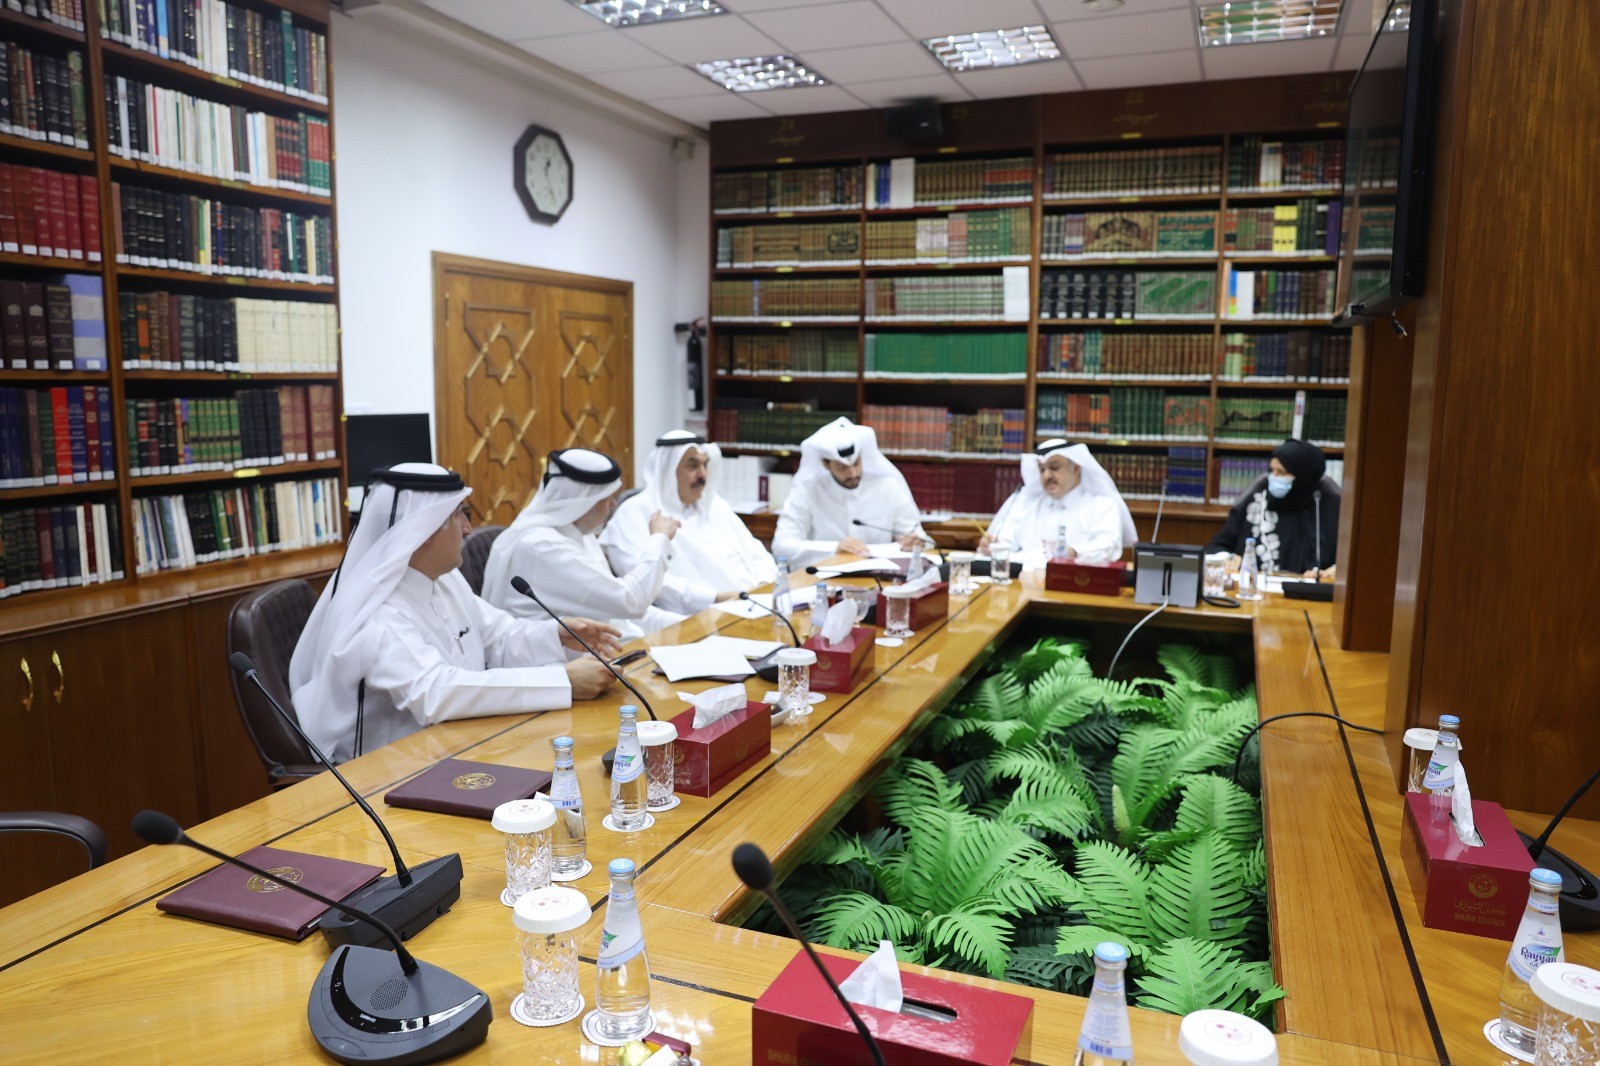 اللجنة الخاصة بدراسة المظاهر المصاحبة للزواج بالشورى تضع تقريرها النهائي